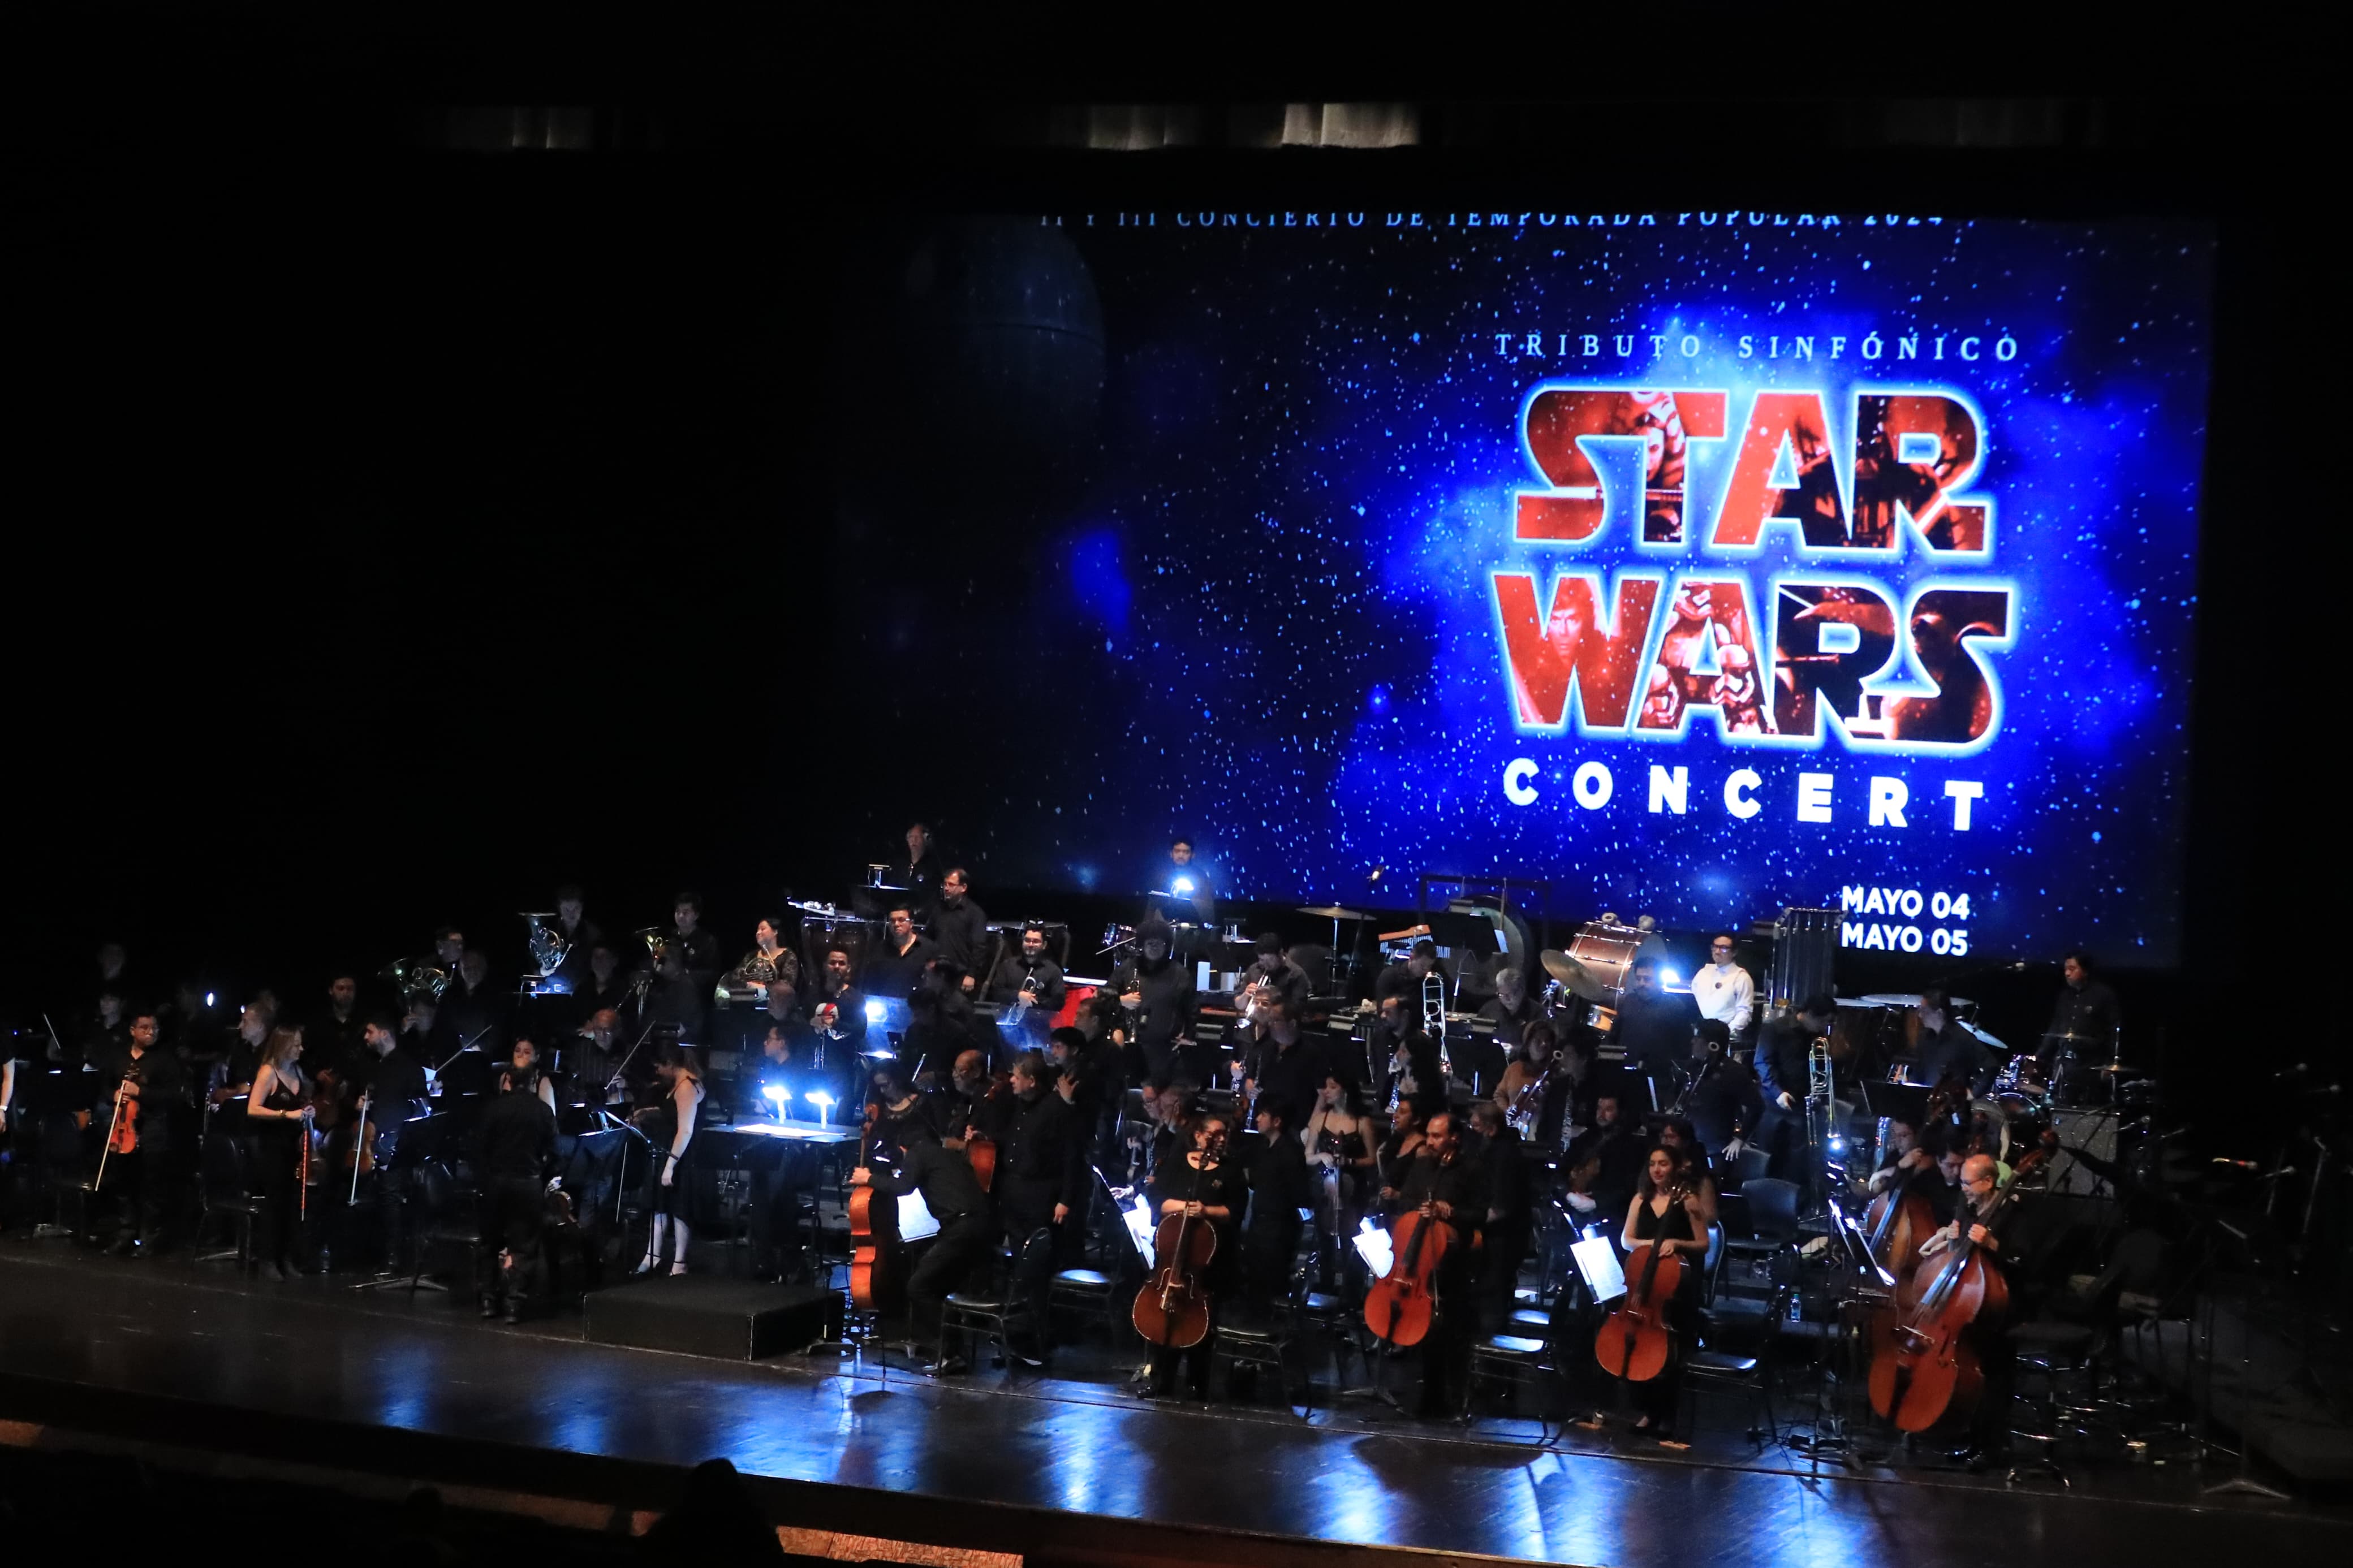 Conciertos en homenaje a Star Wars reunieron a más de 2 mil guatemaltecos en el Teatro Nacional